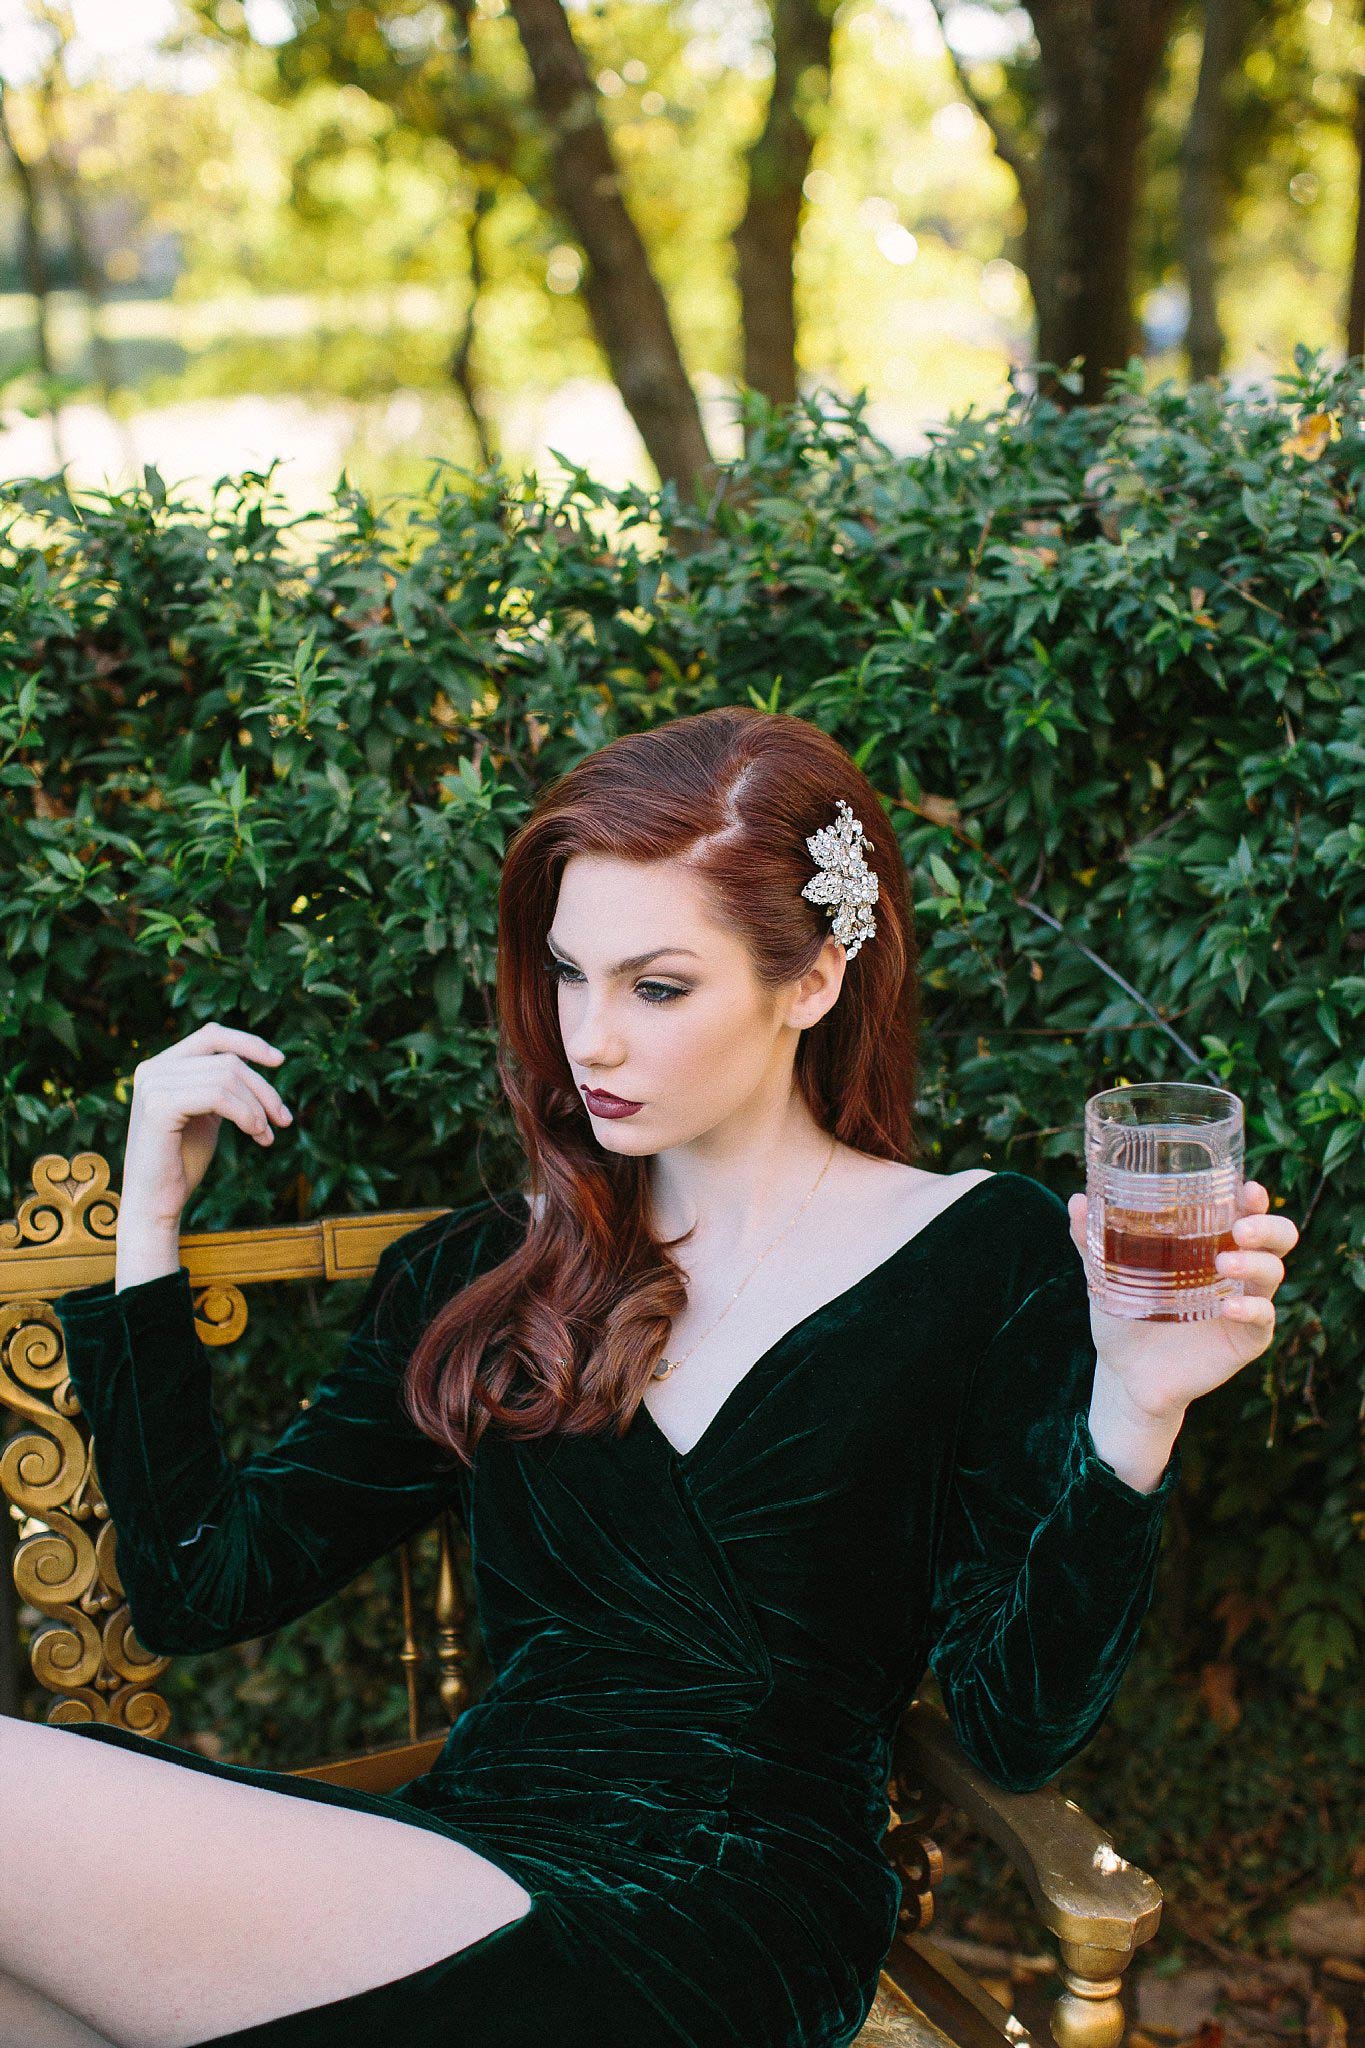 Redhead in velvet green dress drinking whiskey